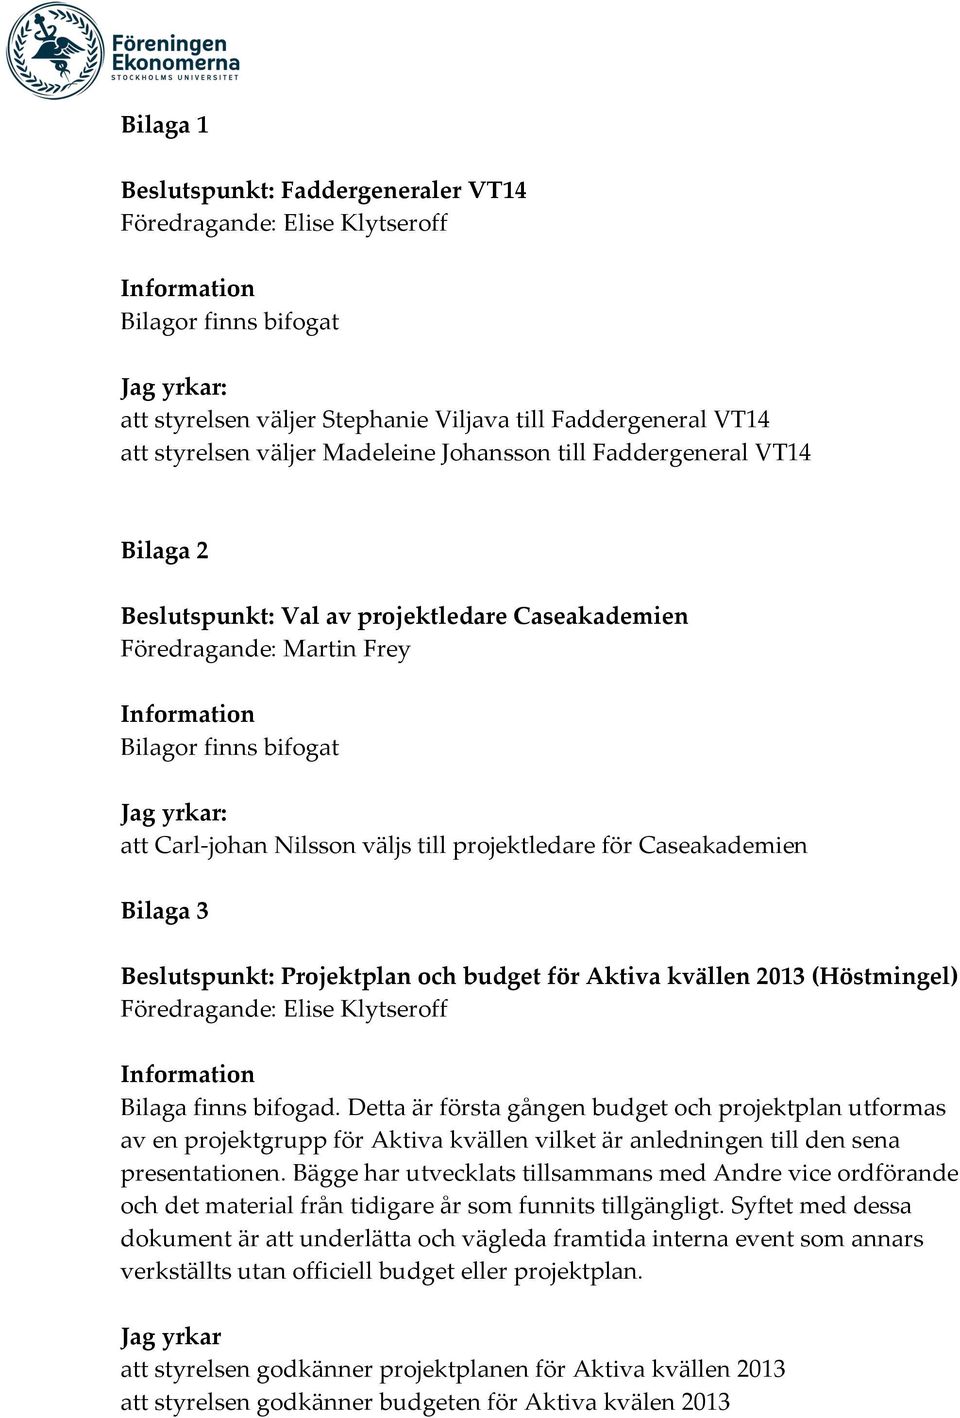 Beslutspunkt: Projektplan och budget för Aktiva kvällen 2013 (Höstmingel) Bilaga finns bifogad.